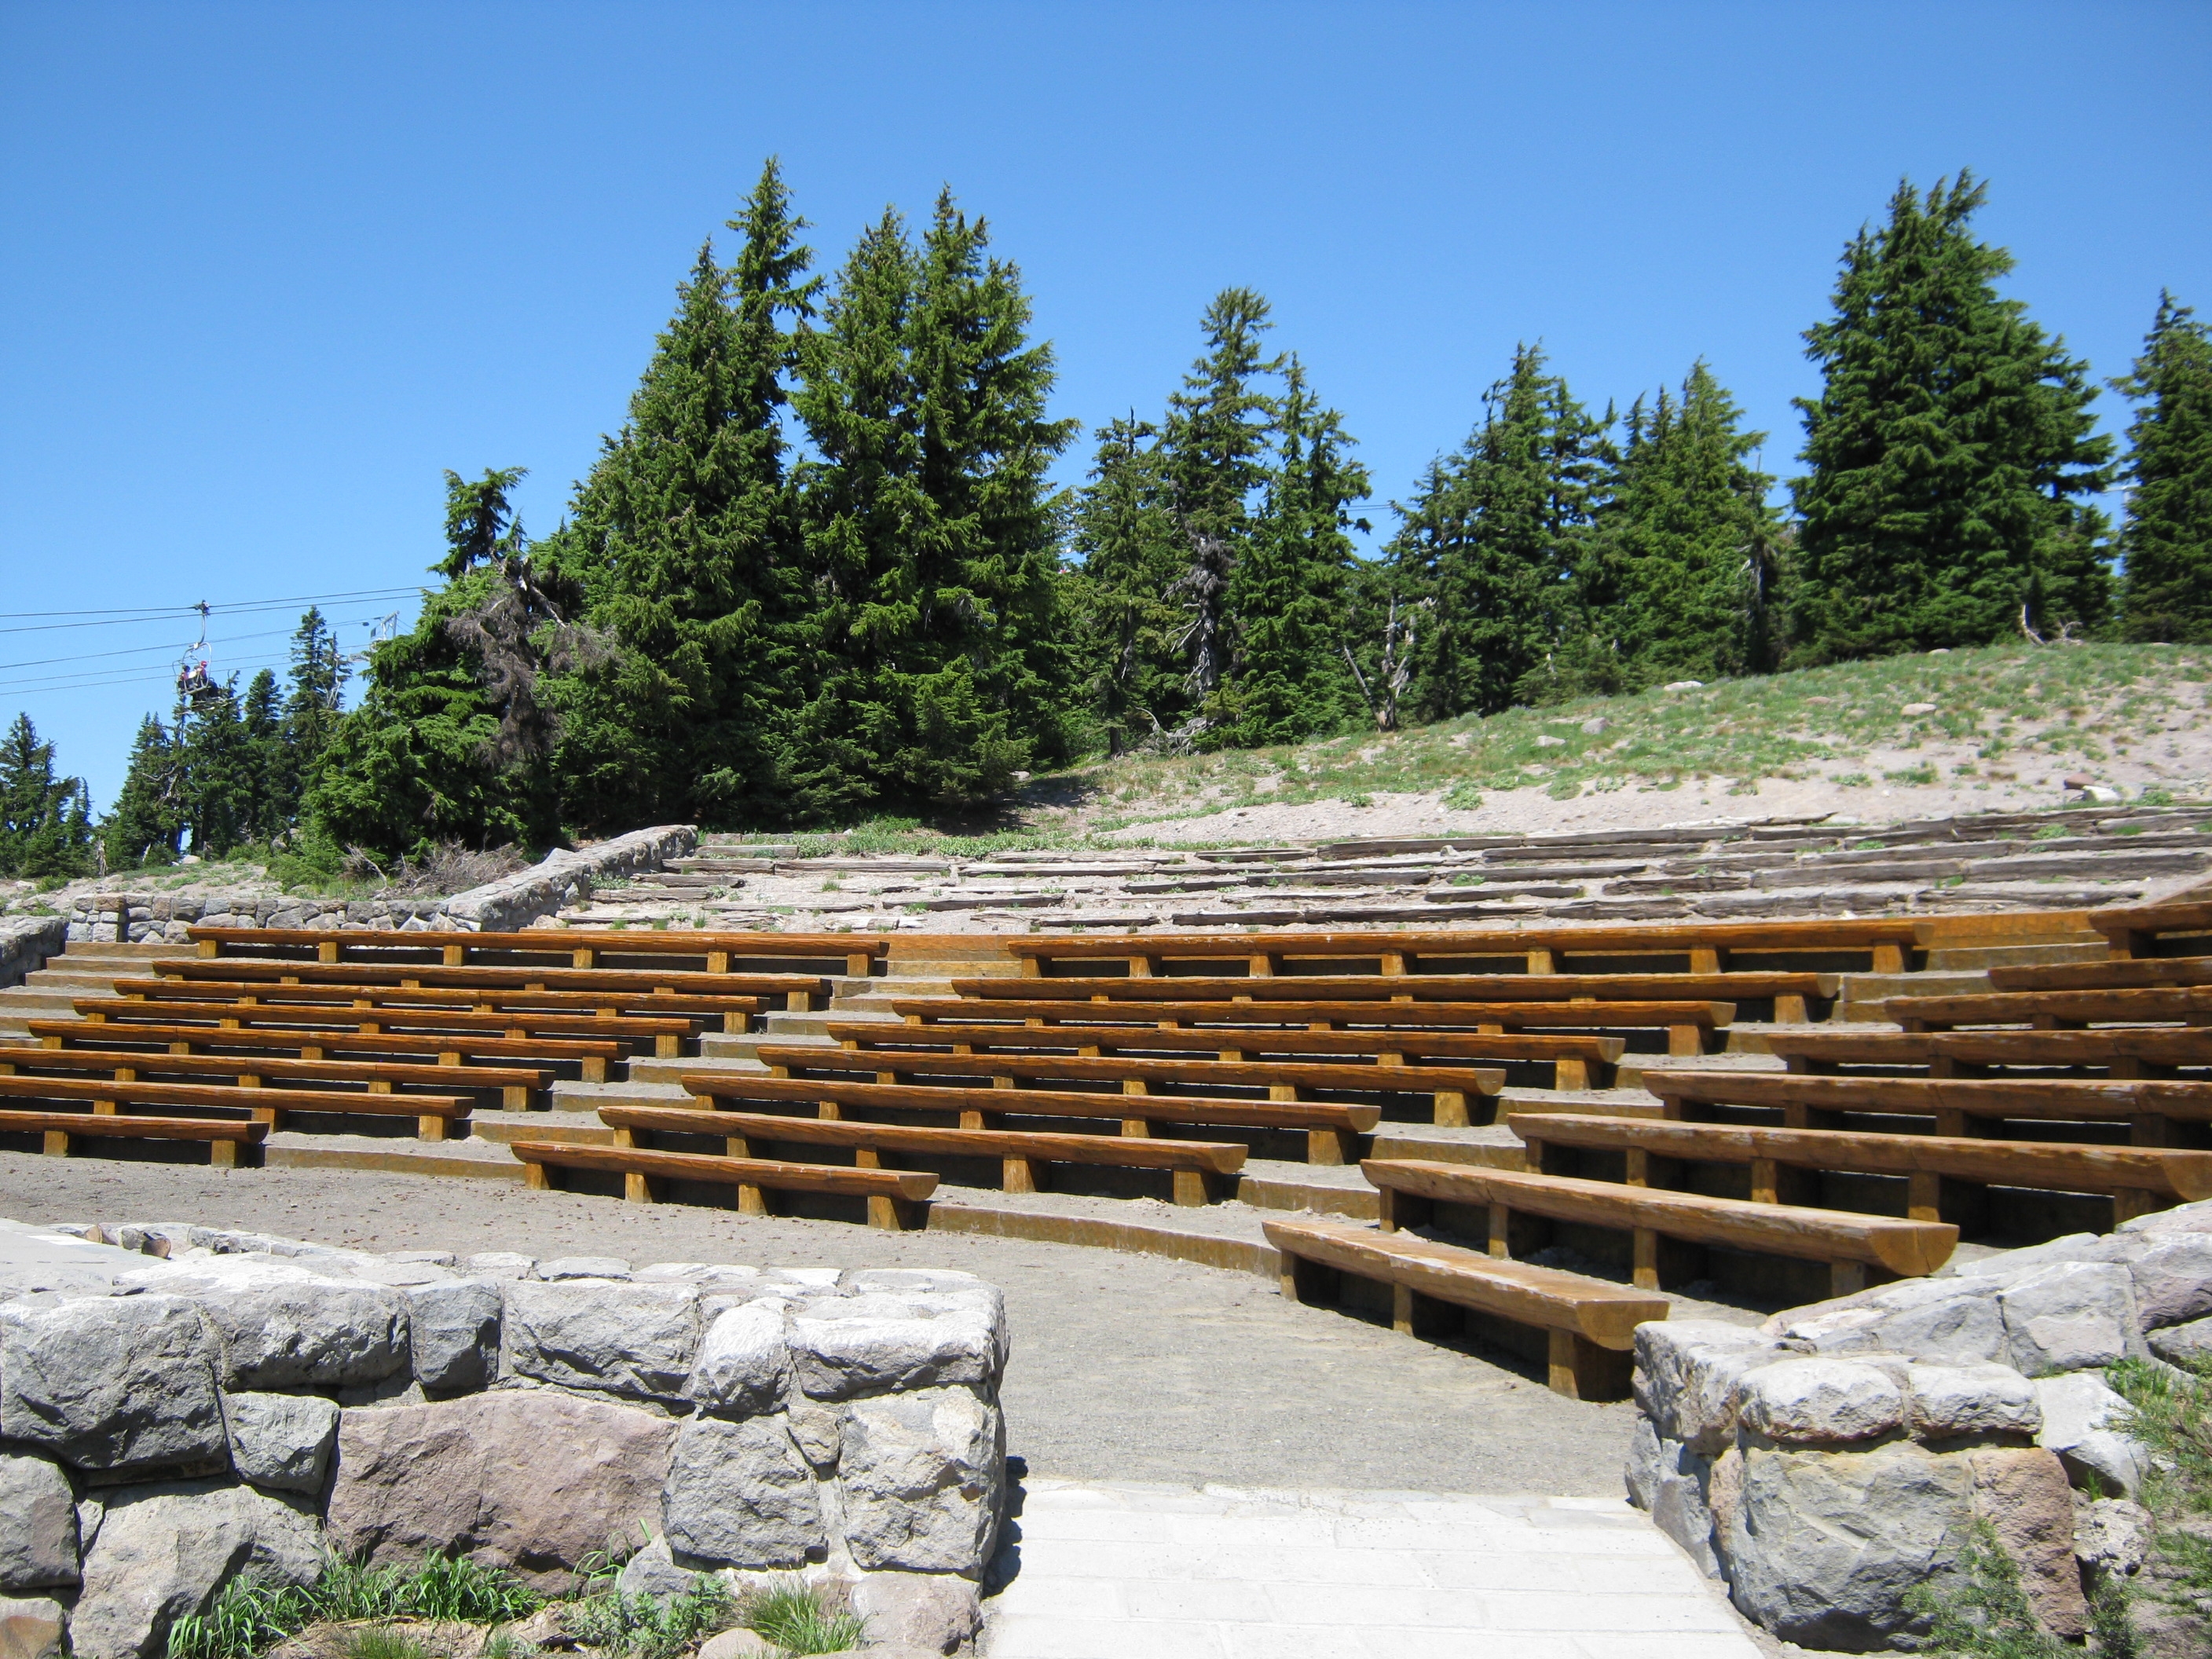 Amphitheater